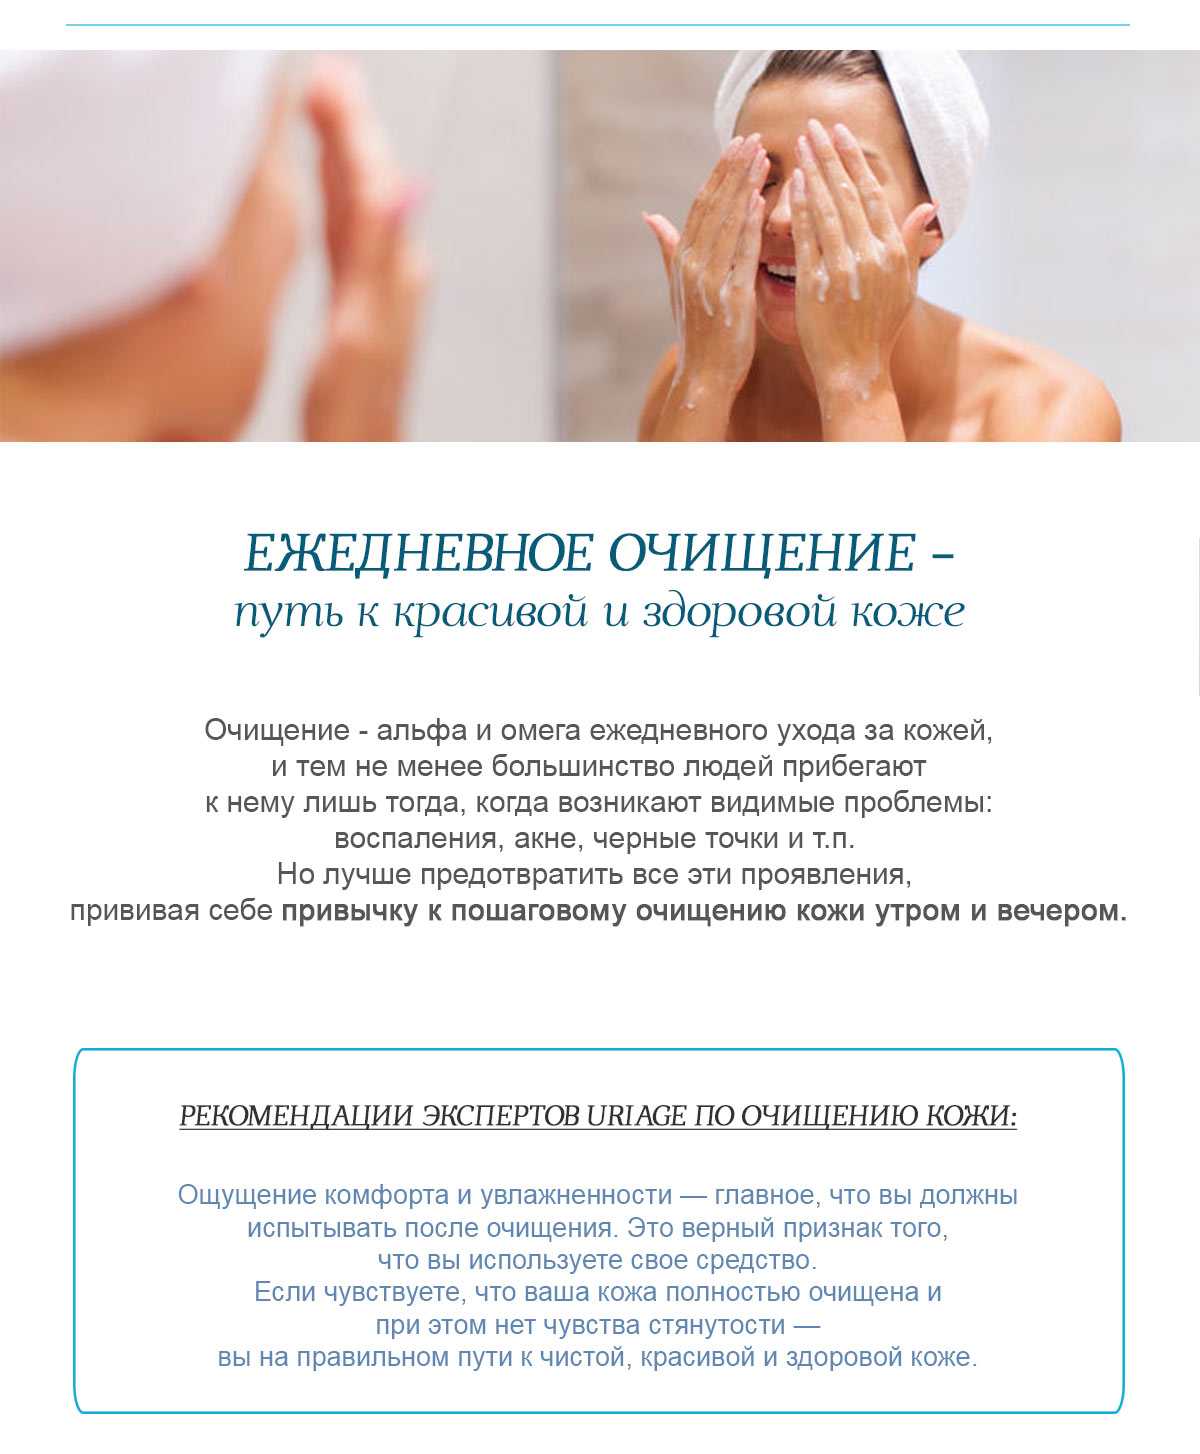 Подготовка и нанесение макияжа на сухую кожу – советы и рекомендации специалиста | портал 1nep.ru